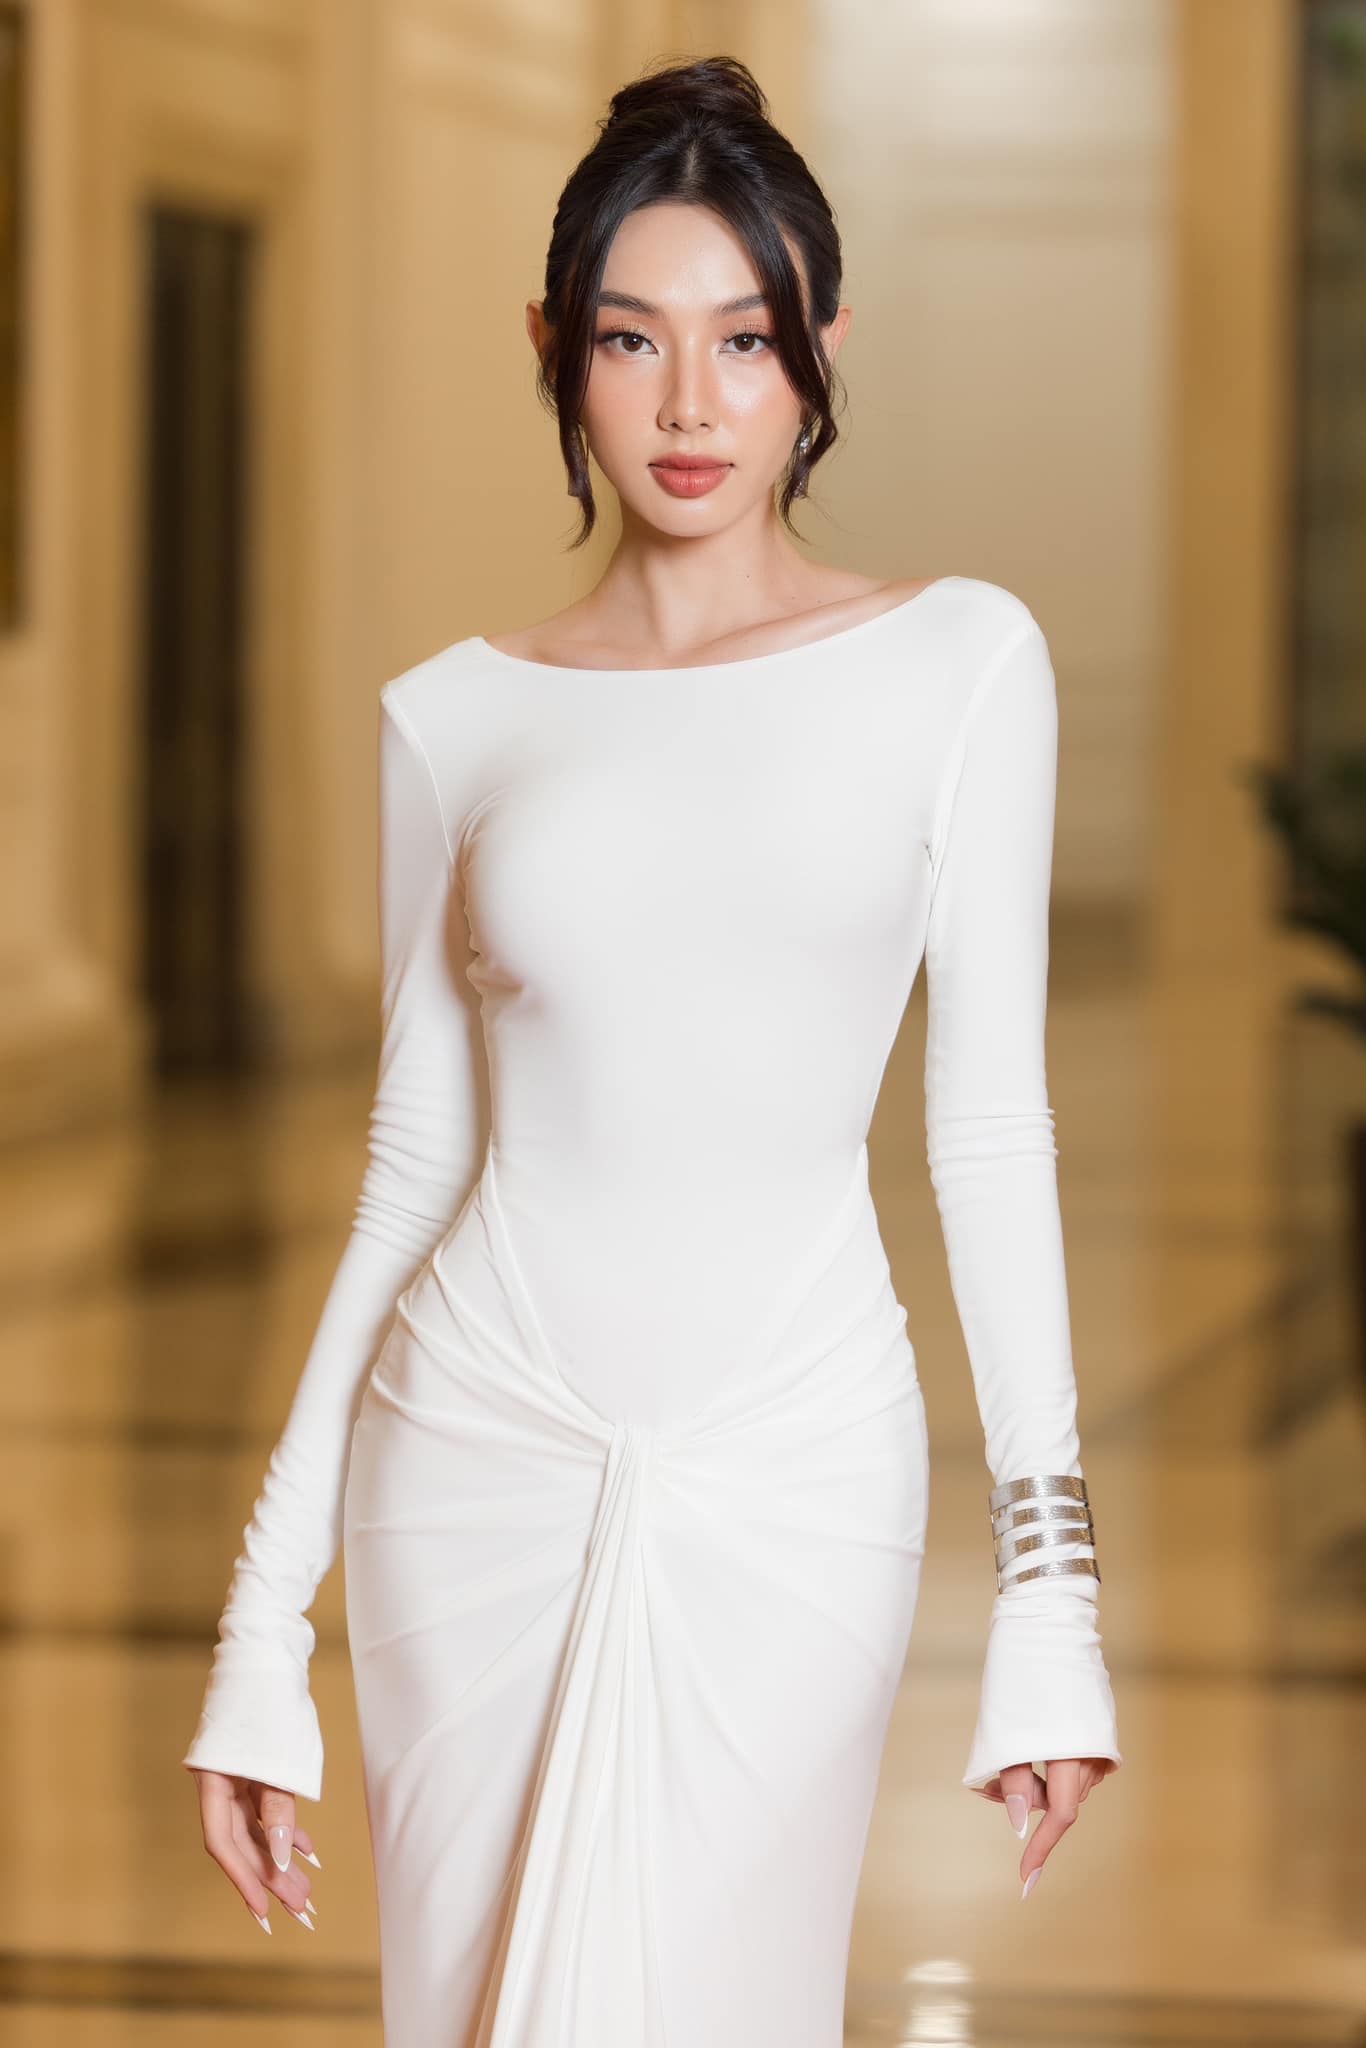 Hoa hậu Thùy Tiên chính thức thắng kiện, không phải trả 1,5 tỉ đồng - 1